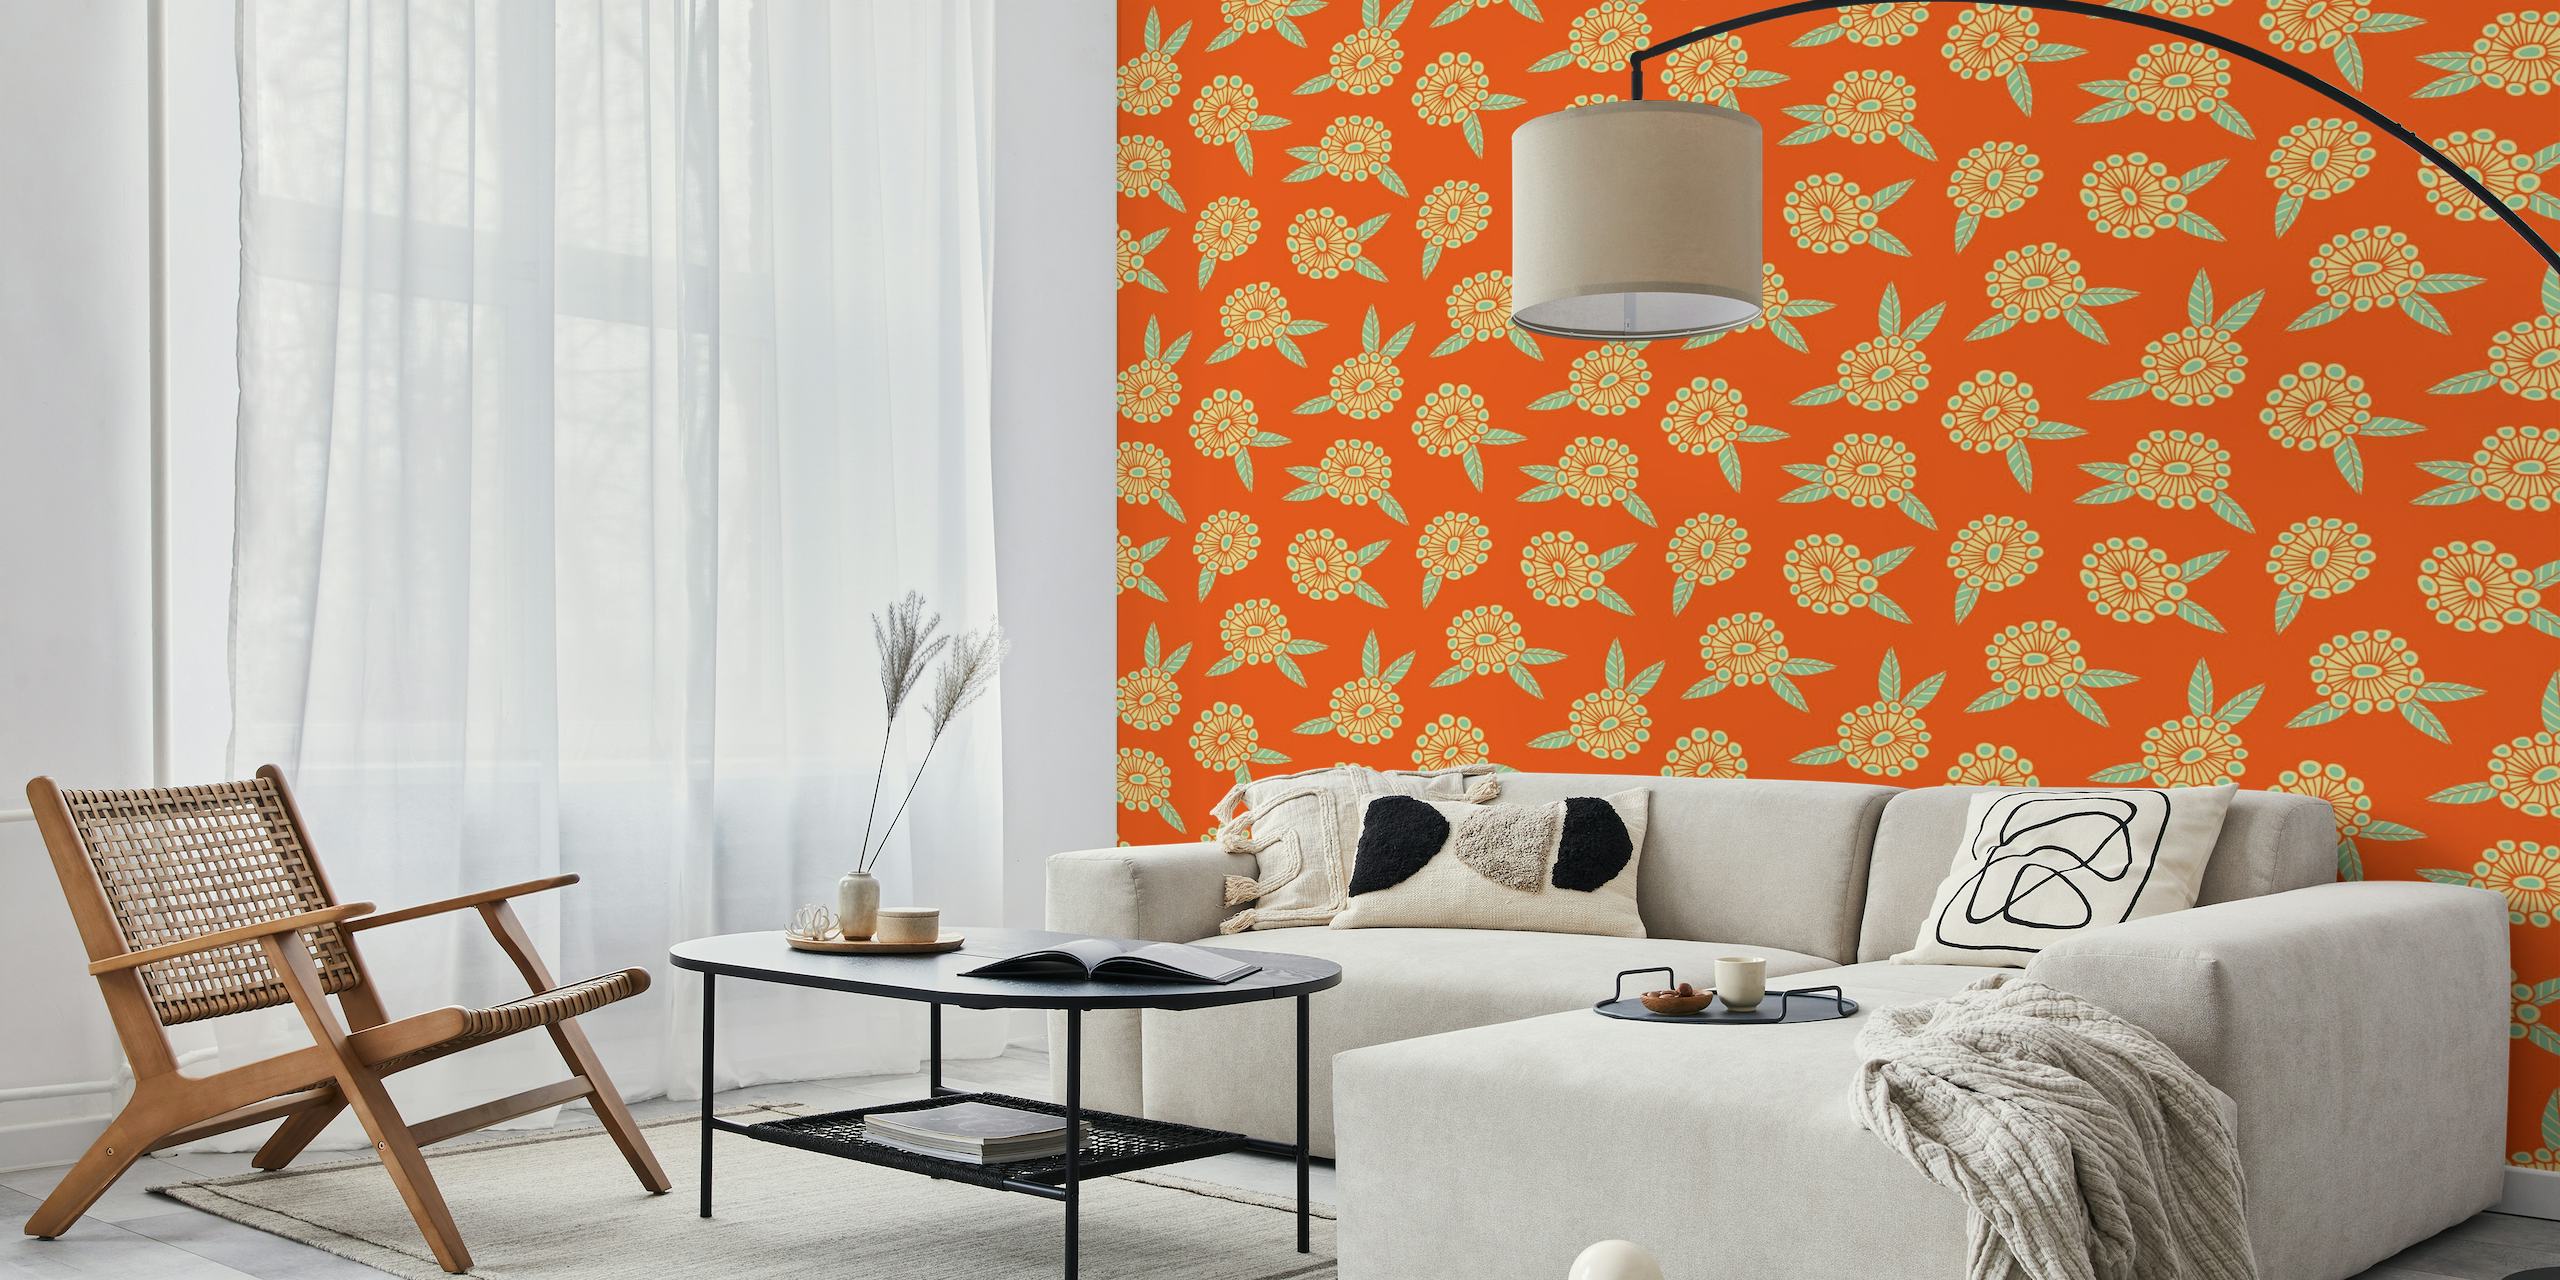 Varmt og solrigt retro blomstermønster på et lys orange baggrundsvægmaleri